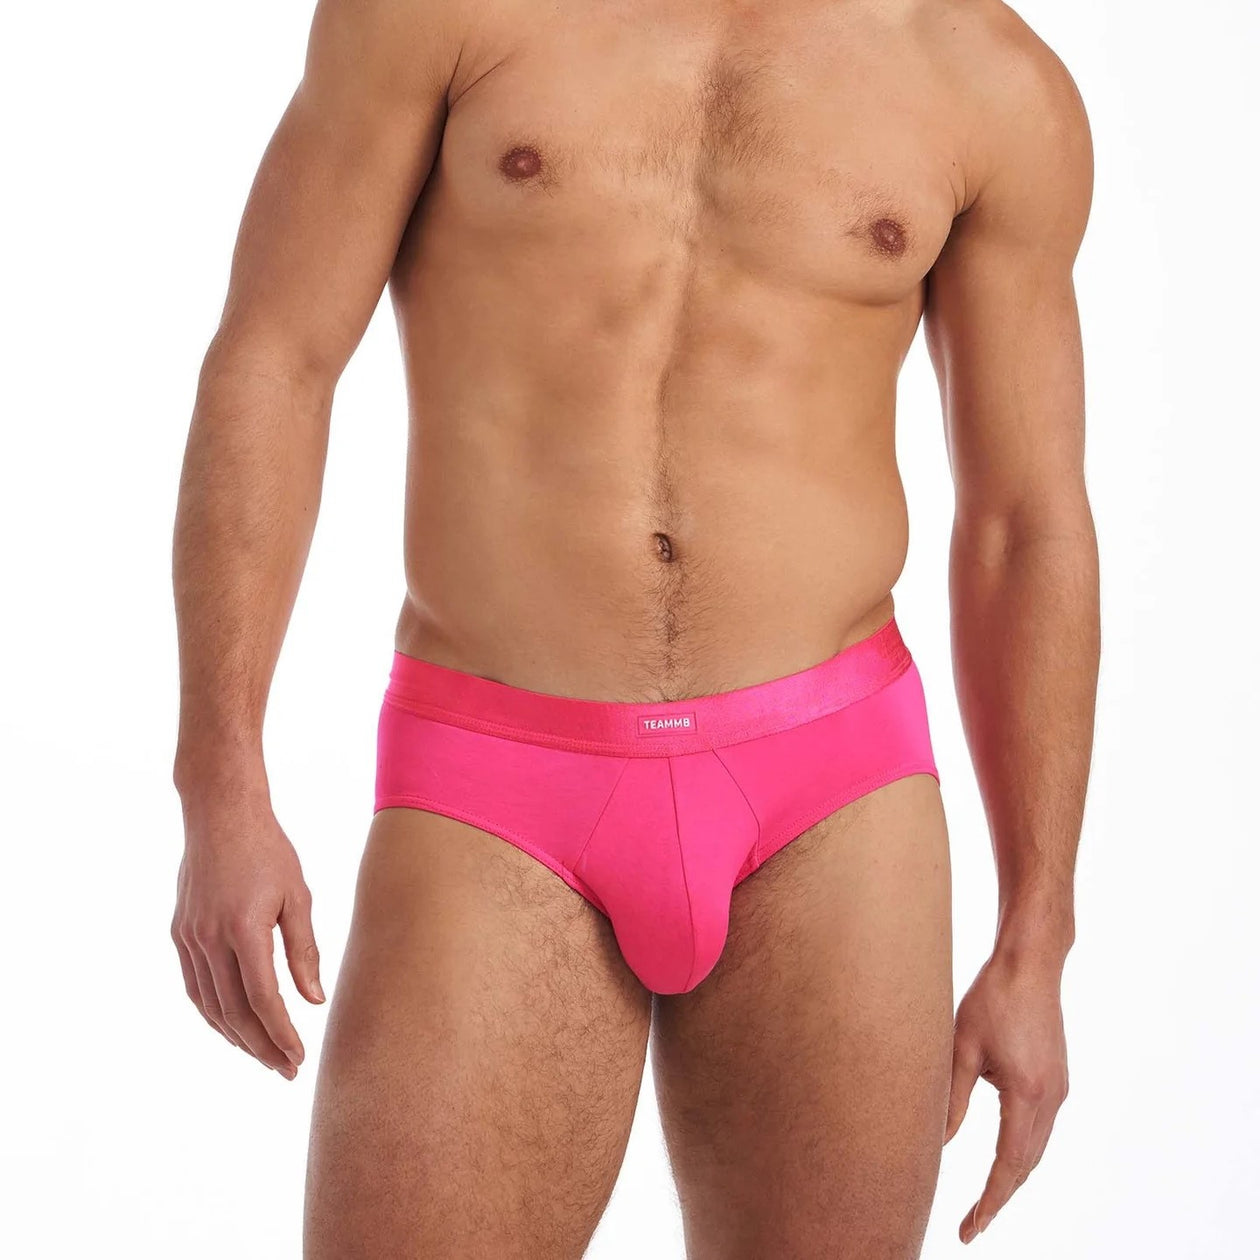 Teamm8 You Bamboo brief pink – Egoist Underwear